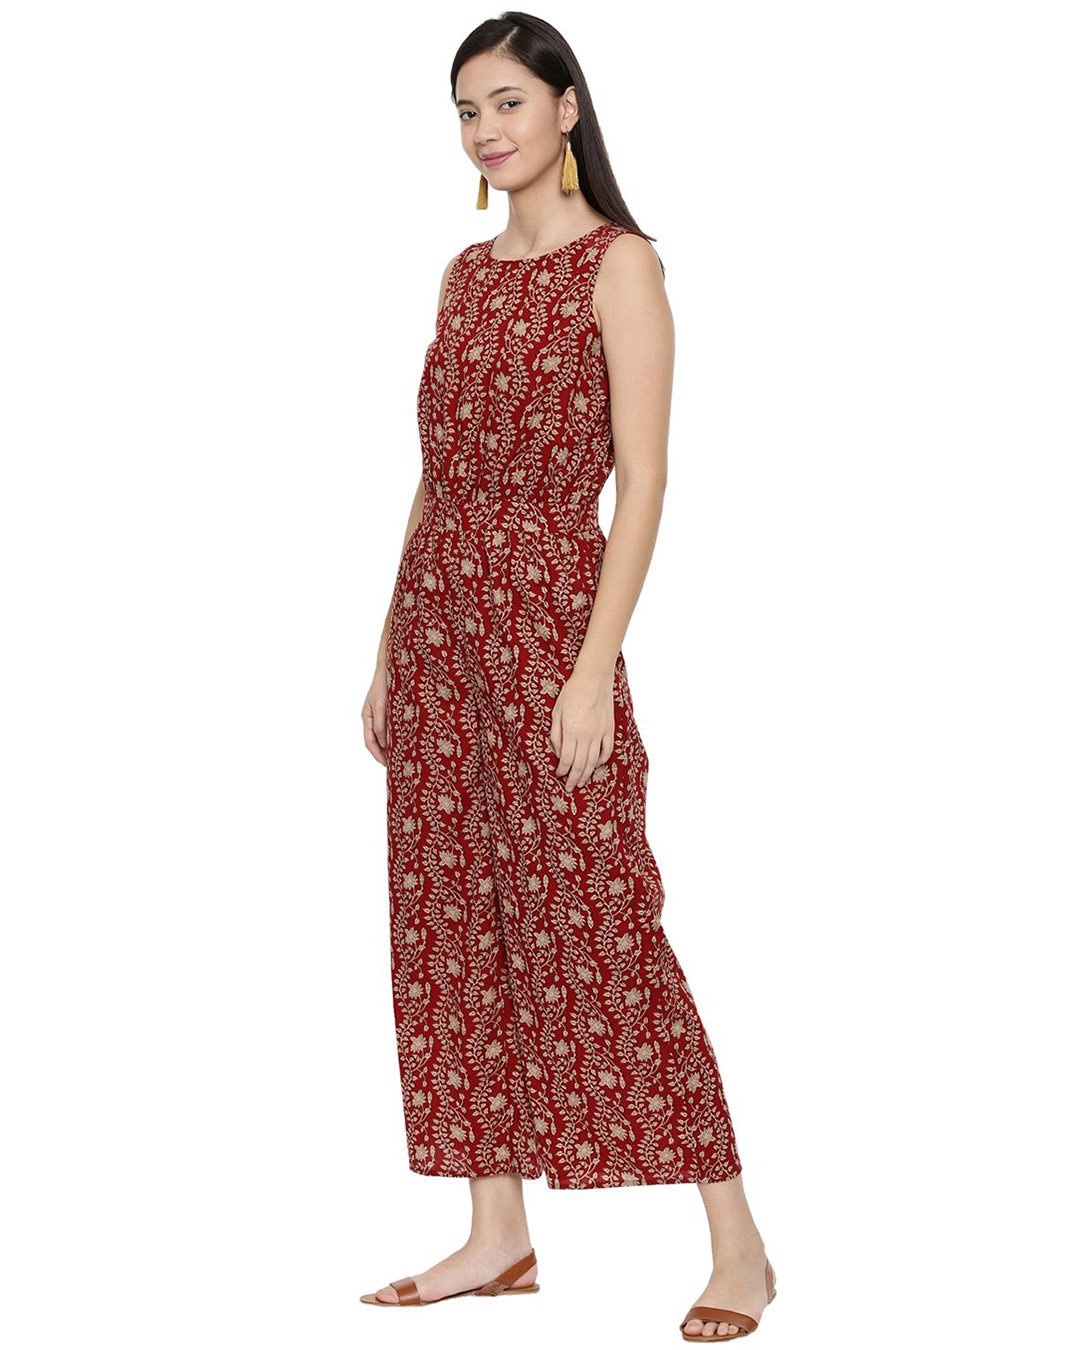 Shop Women's Prancing Scarlet Red Kalamkari Print Sleeveless Cotton Jumpsuit